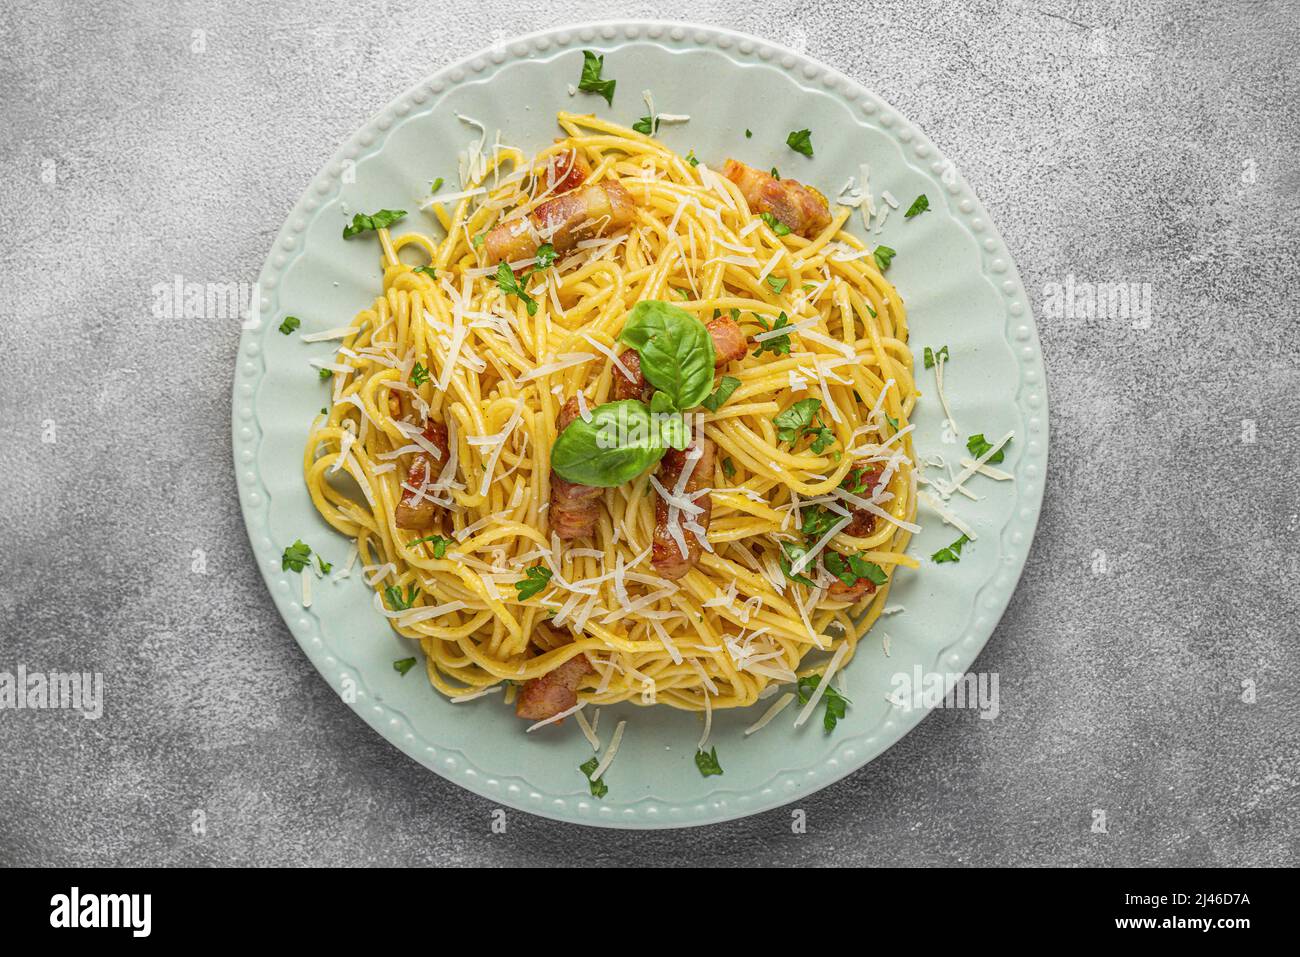 Spaghetti carbonara aux pâtes avec pancetta, bacon, œufs, parmesan et sauce crème sur table grise. Cuisine italienne. Vue de dessus Banque D'Images